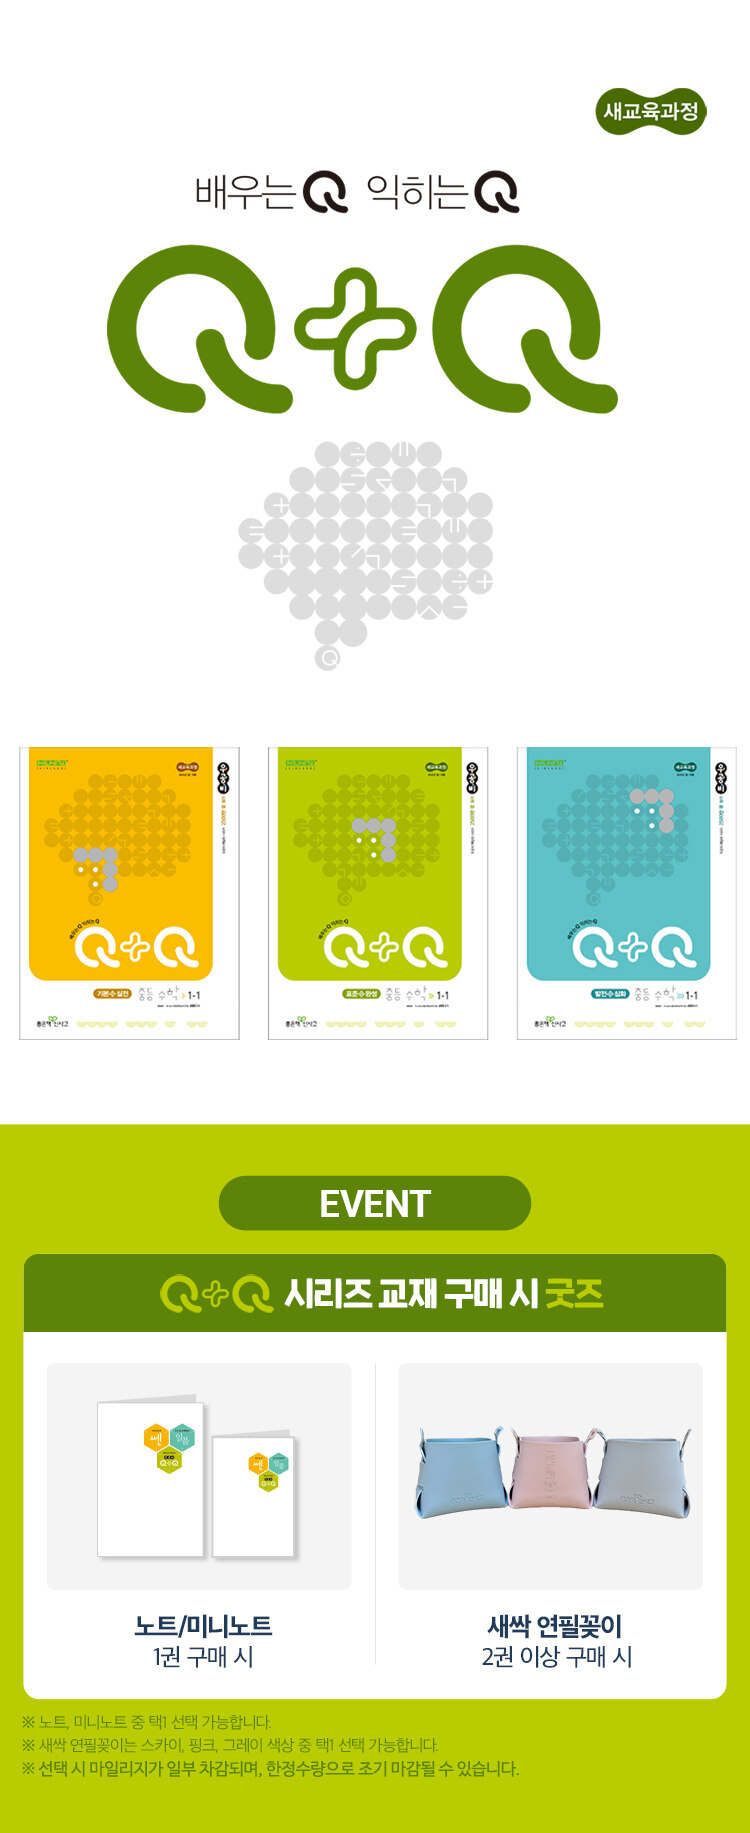 Q+Q 시리즈 이벤트